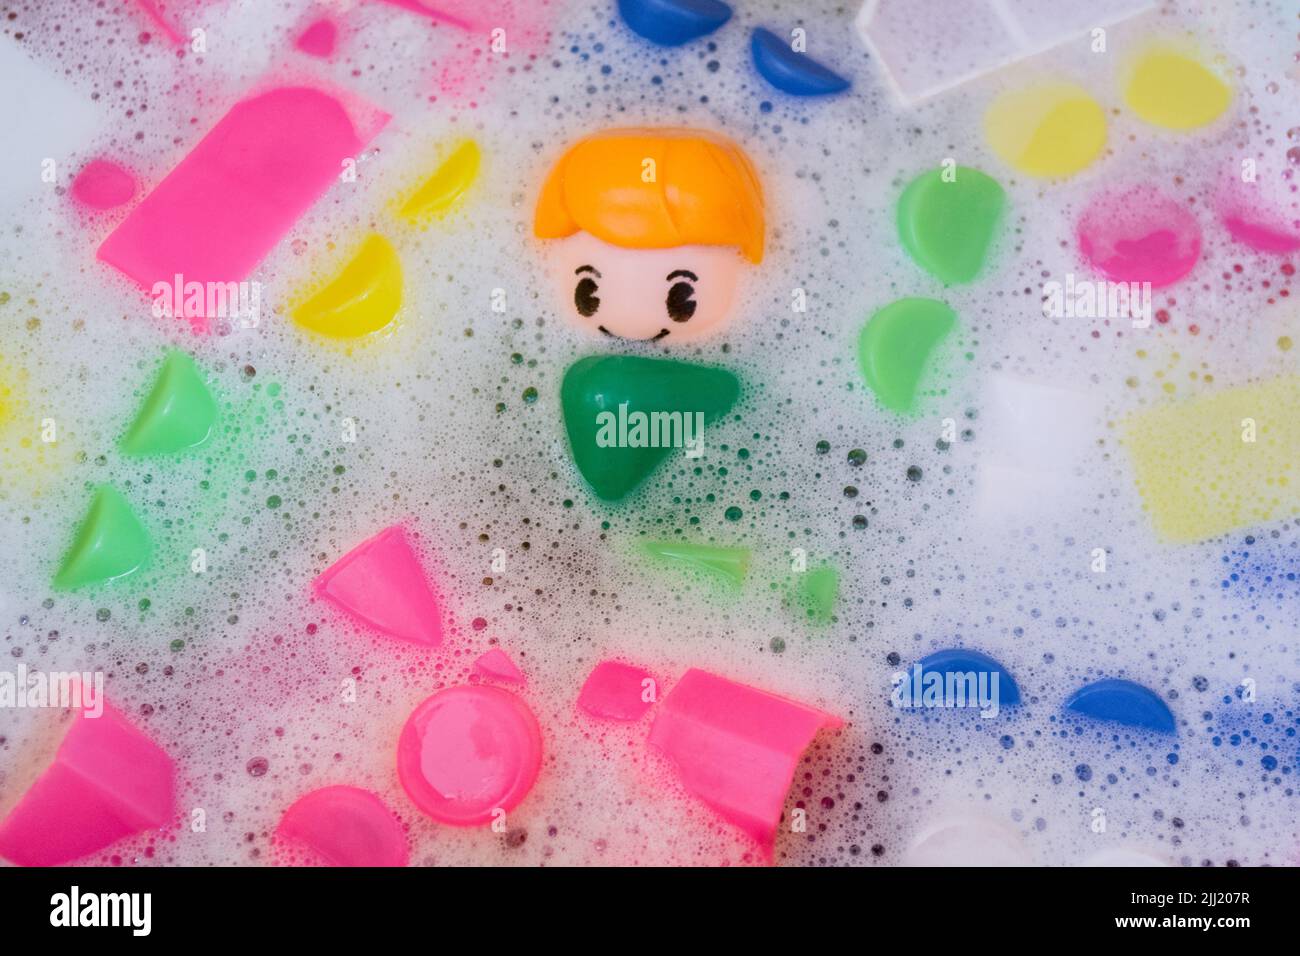 Lavaggio di giocattoli per bambini, blocchi da costruzione in plastica con figurine. Un piccolo compagno sorridente e cubi colorati galleggiano nell'acqua schiumosa. Foto Stock